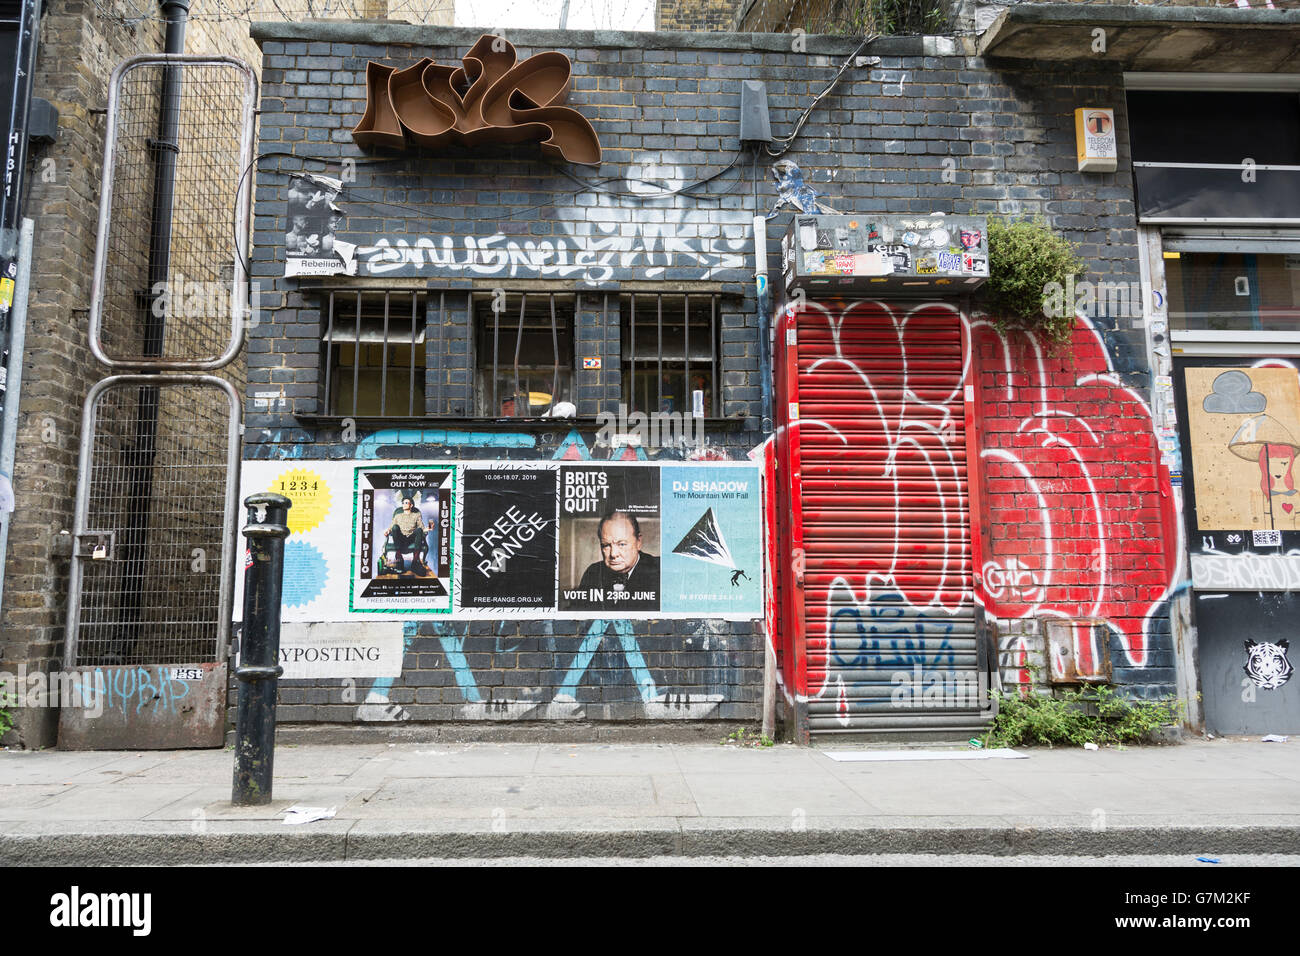 Gli inglesi non mollano cartellone elettorale e graffiti in Spitalfields in East End di Londra Foto Stock